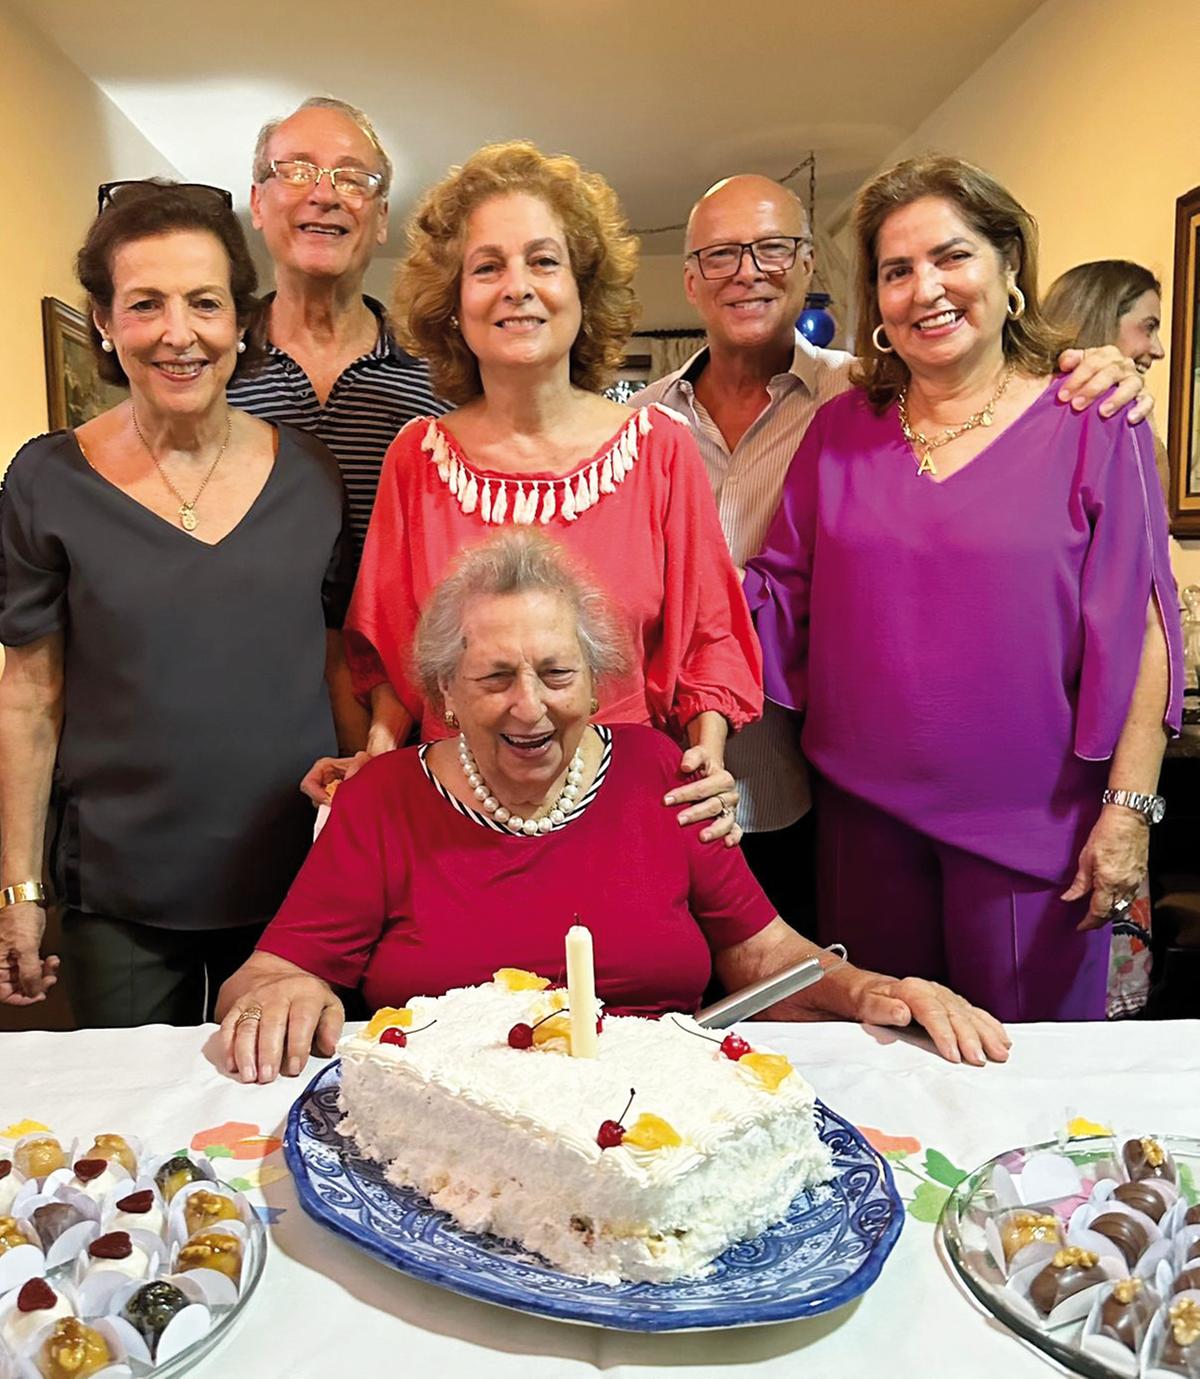 Dona Zeca Derenusson Franco chega aos 99 anos de idade com a maior saúde e energia, cercada pelo amor dos seus filhos Zequinha, Ricardo, Verinha, Chiquinho e Licinha (Foto/Arquivo pessoal)